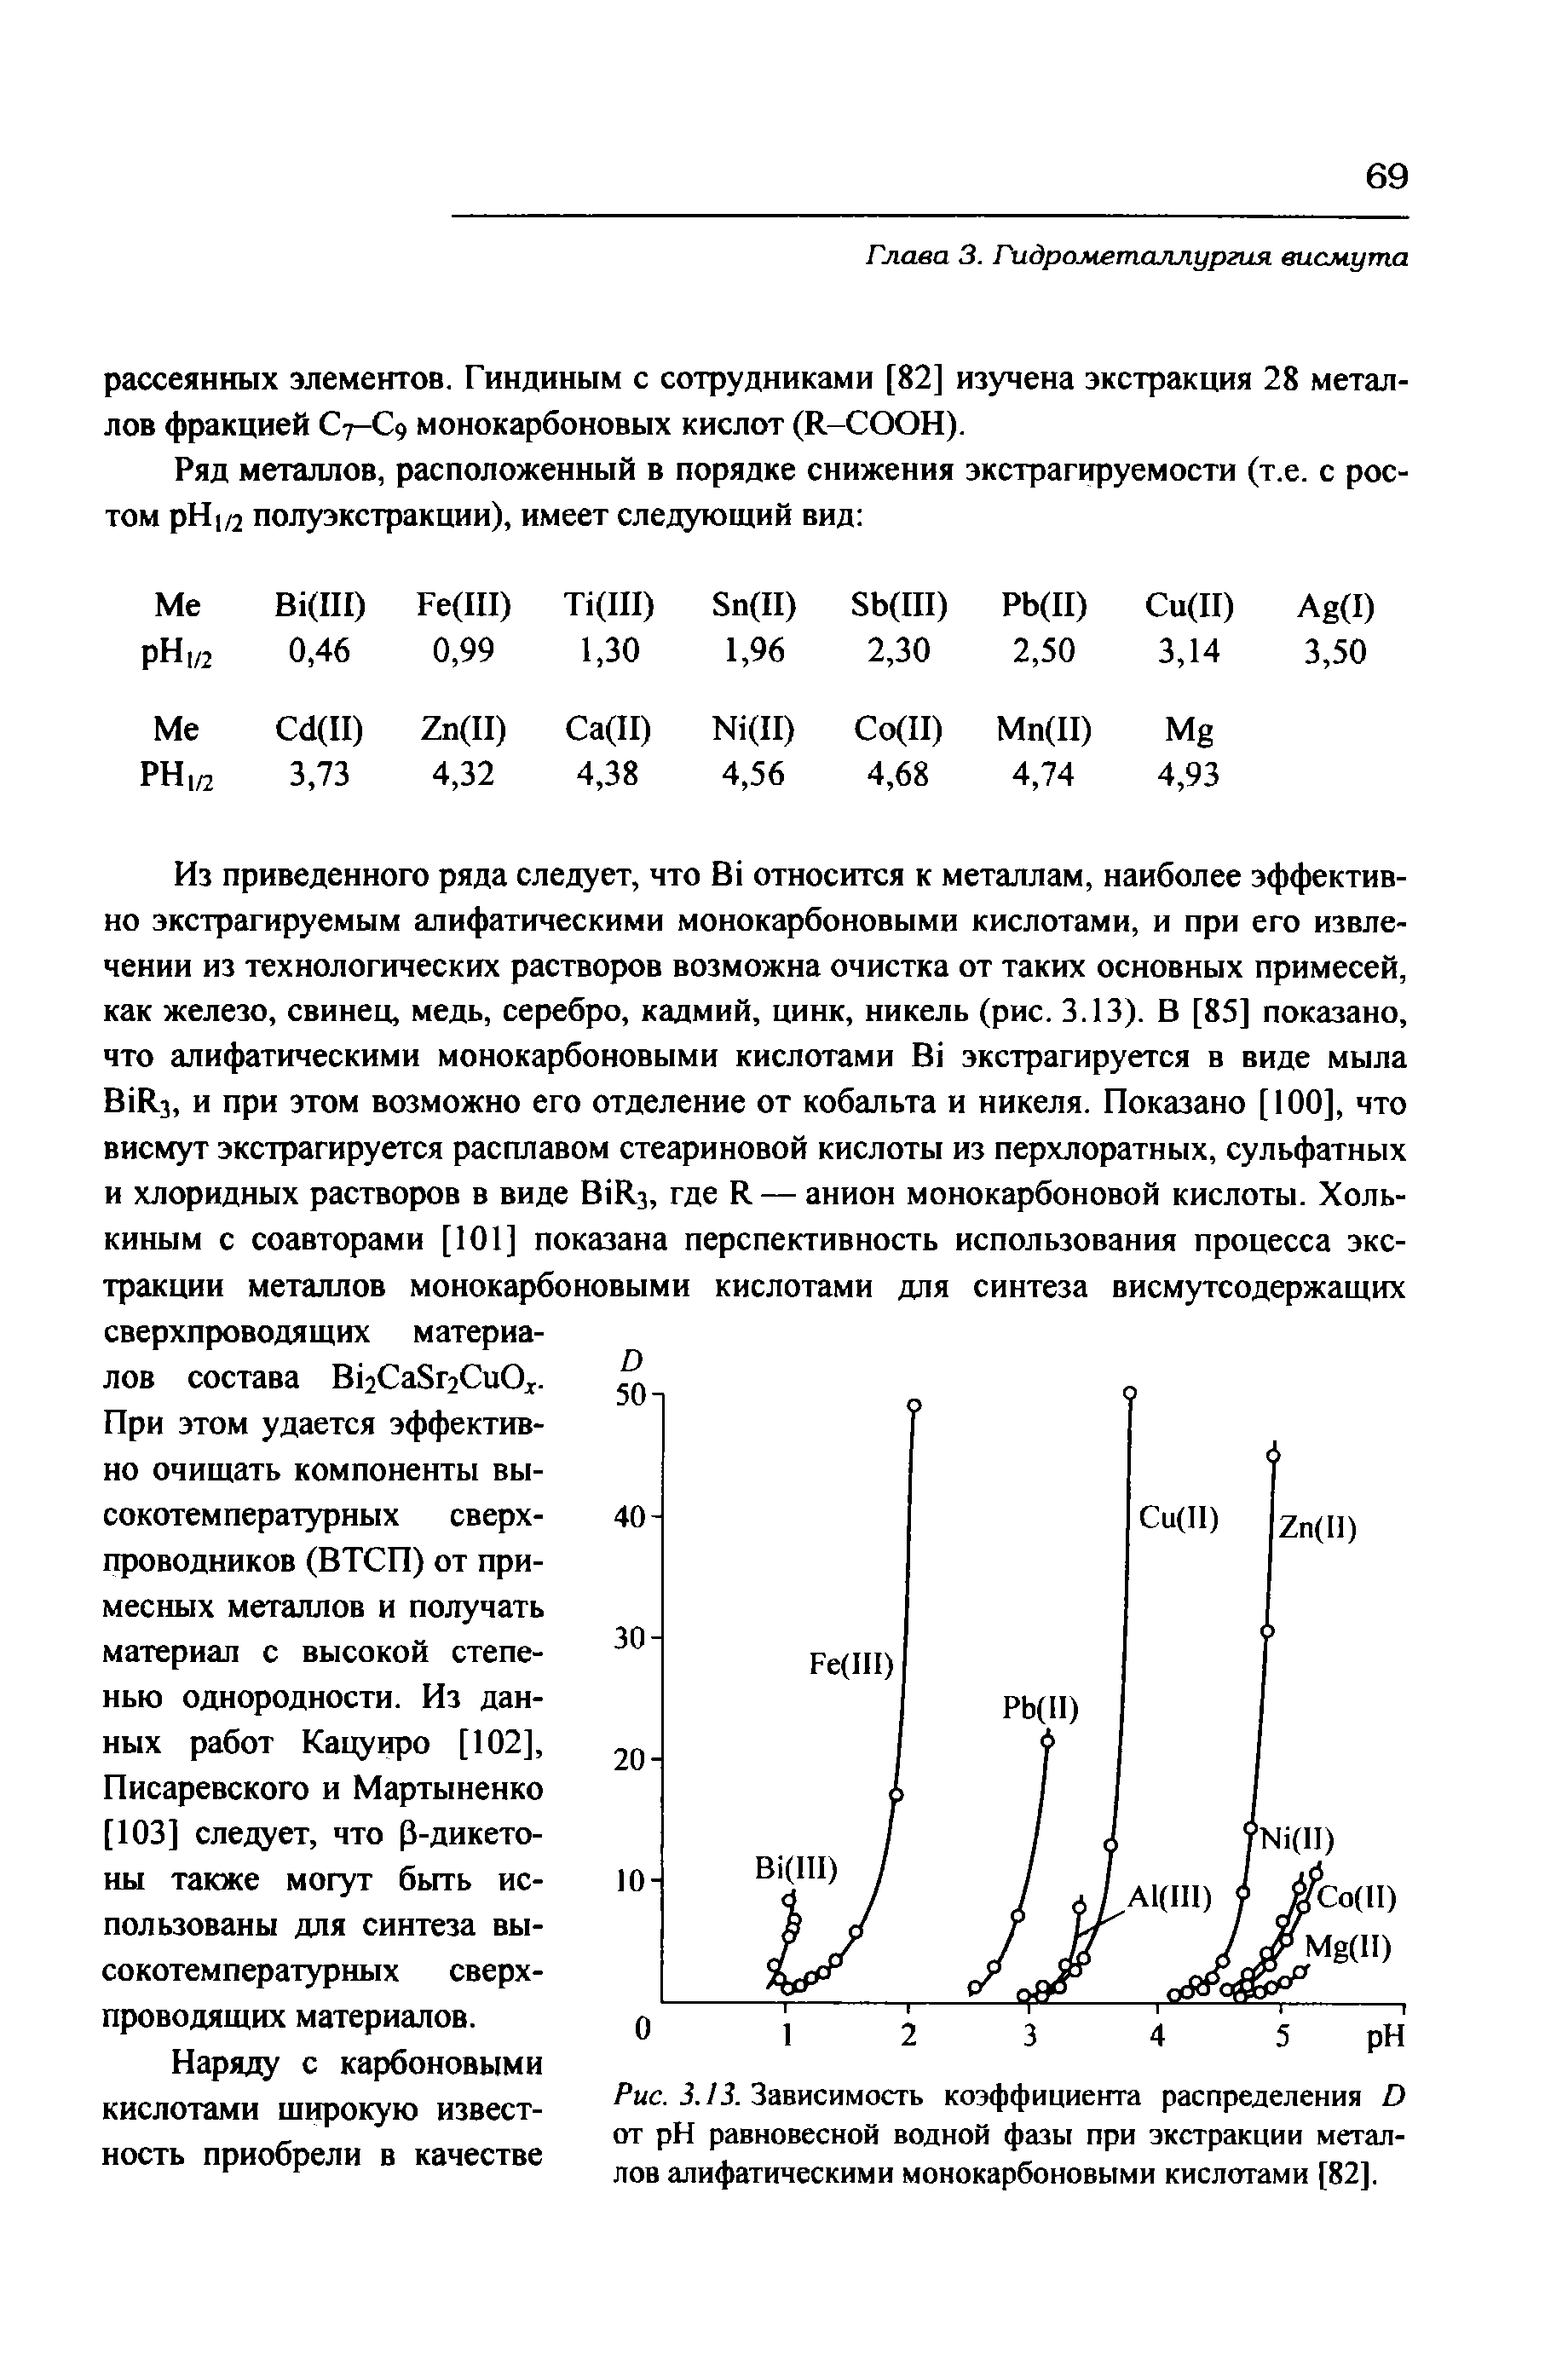 Писаревского и Мартыненко [103] следует, что Р-дикето-ны также могут быть использованы для синтеза высокотемпературных сверхпроводящих материалов.